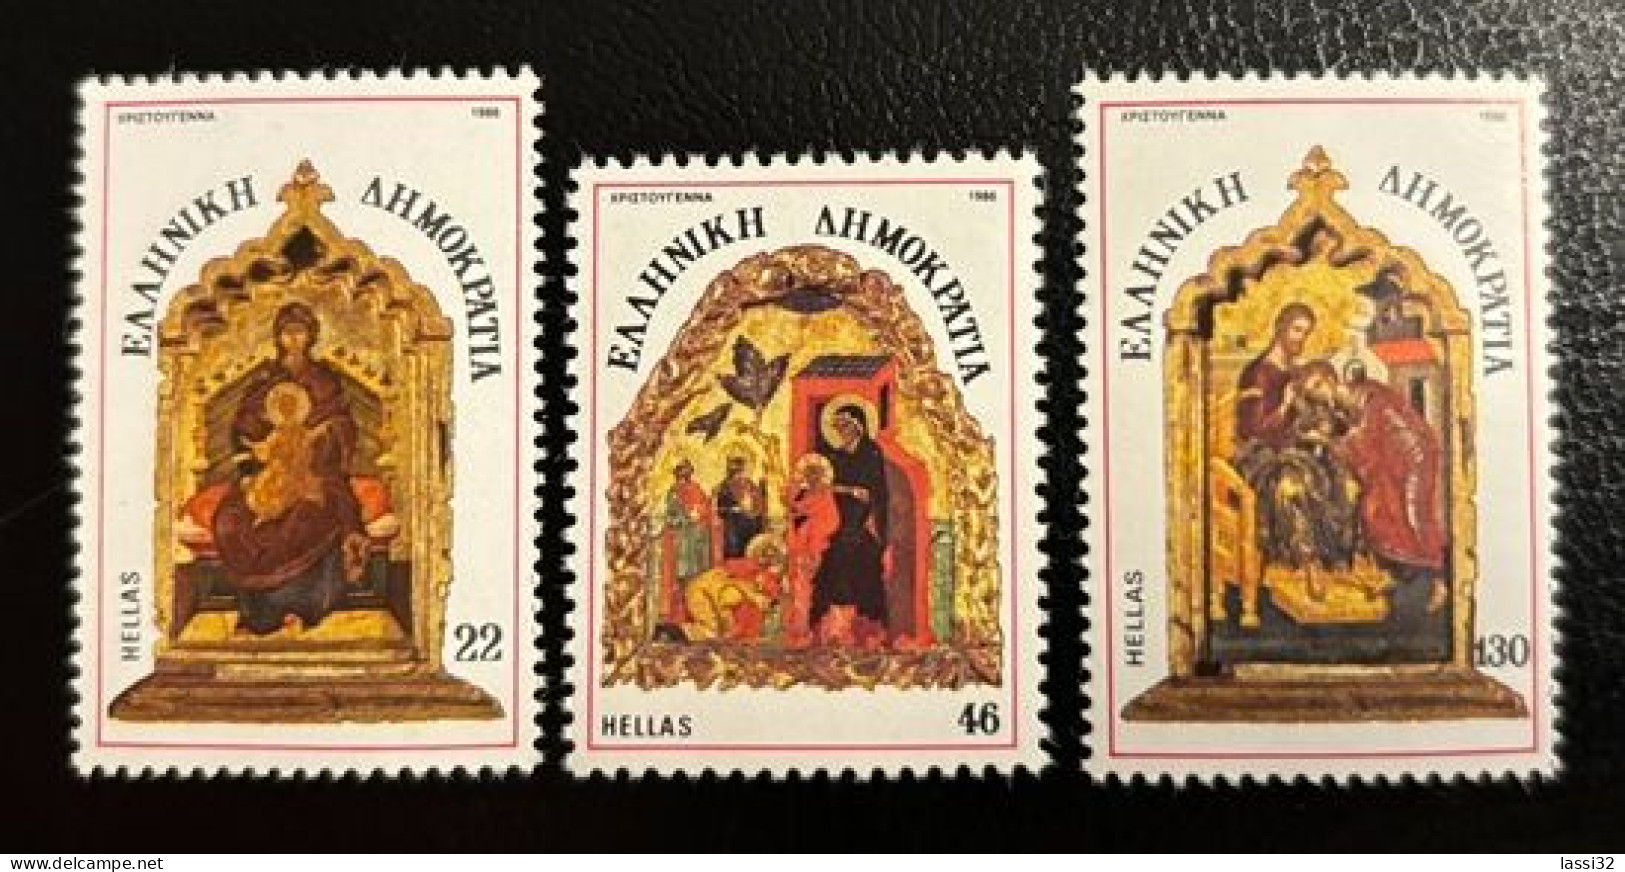 GREECE, 1986, CHRISTMAS, MNH - Used Stamps